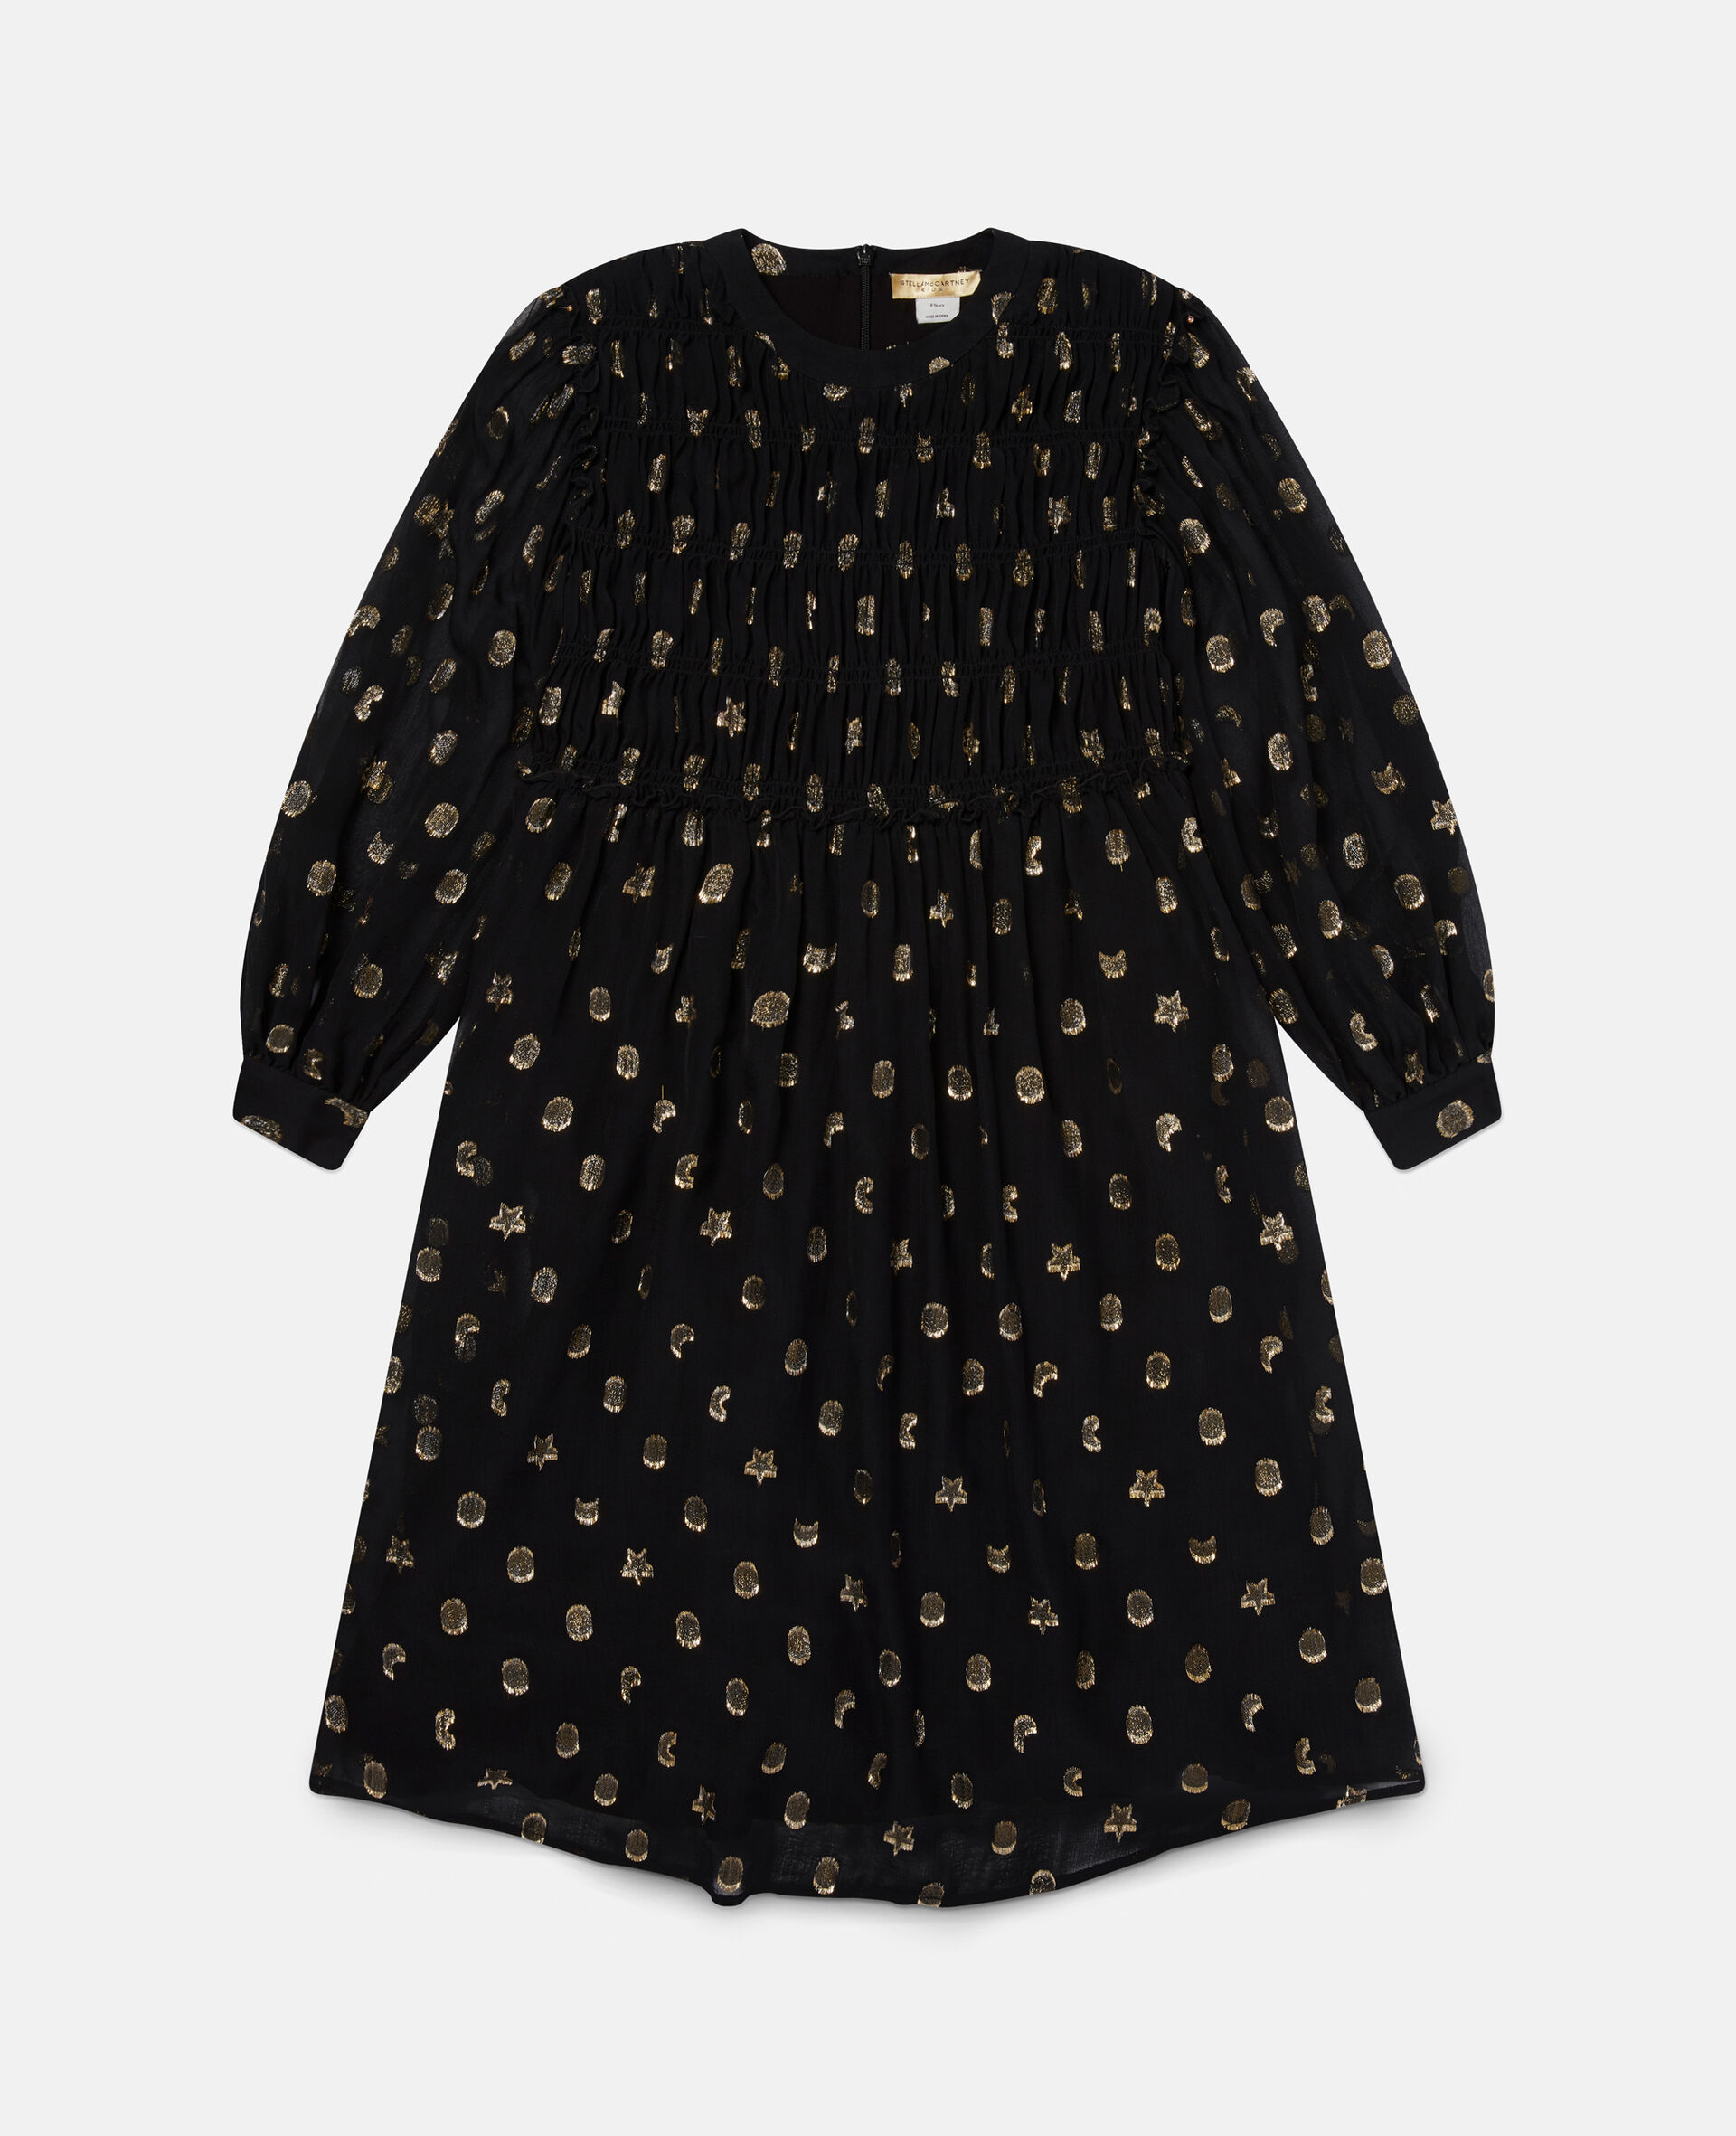 Gold Ruched Shapes Print Dress-Black-large image number 0